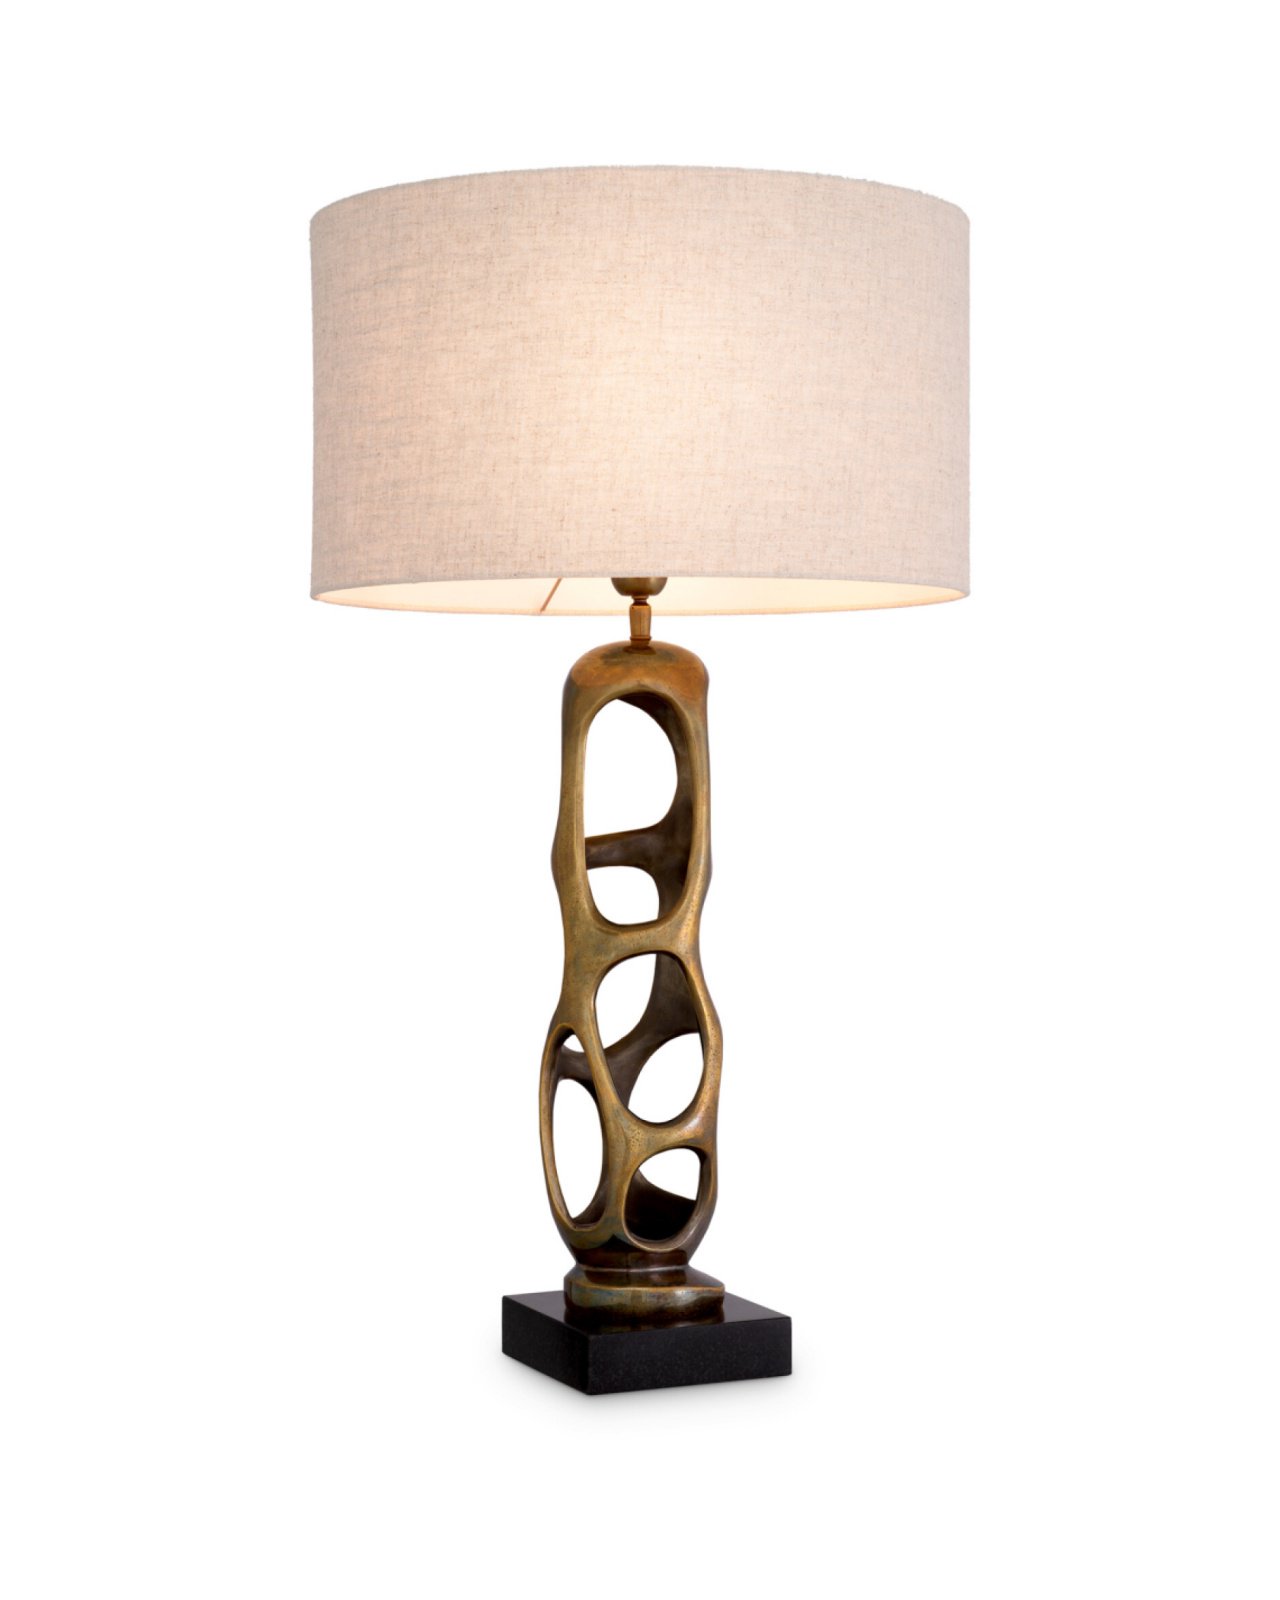 Kearny Table Lamp Vintage Brass